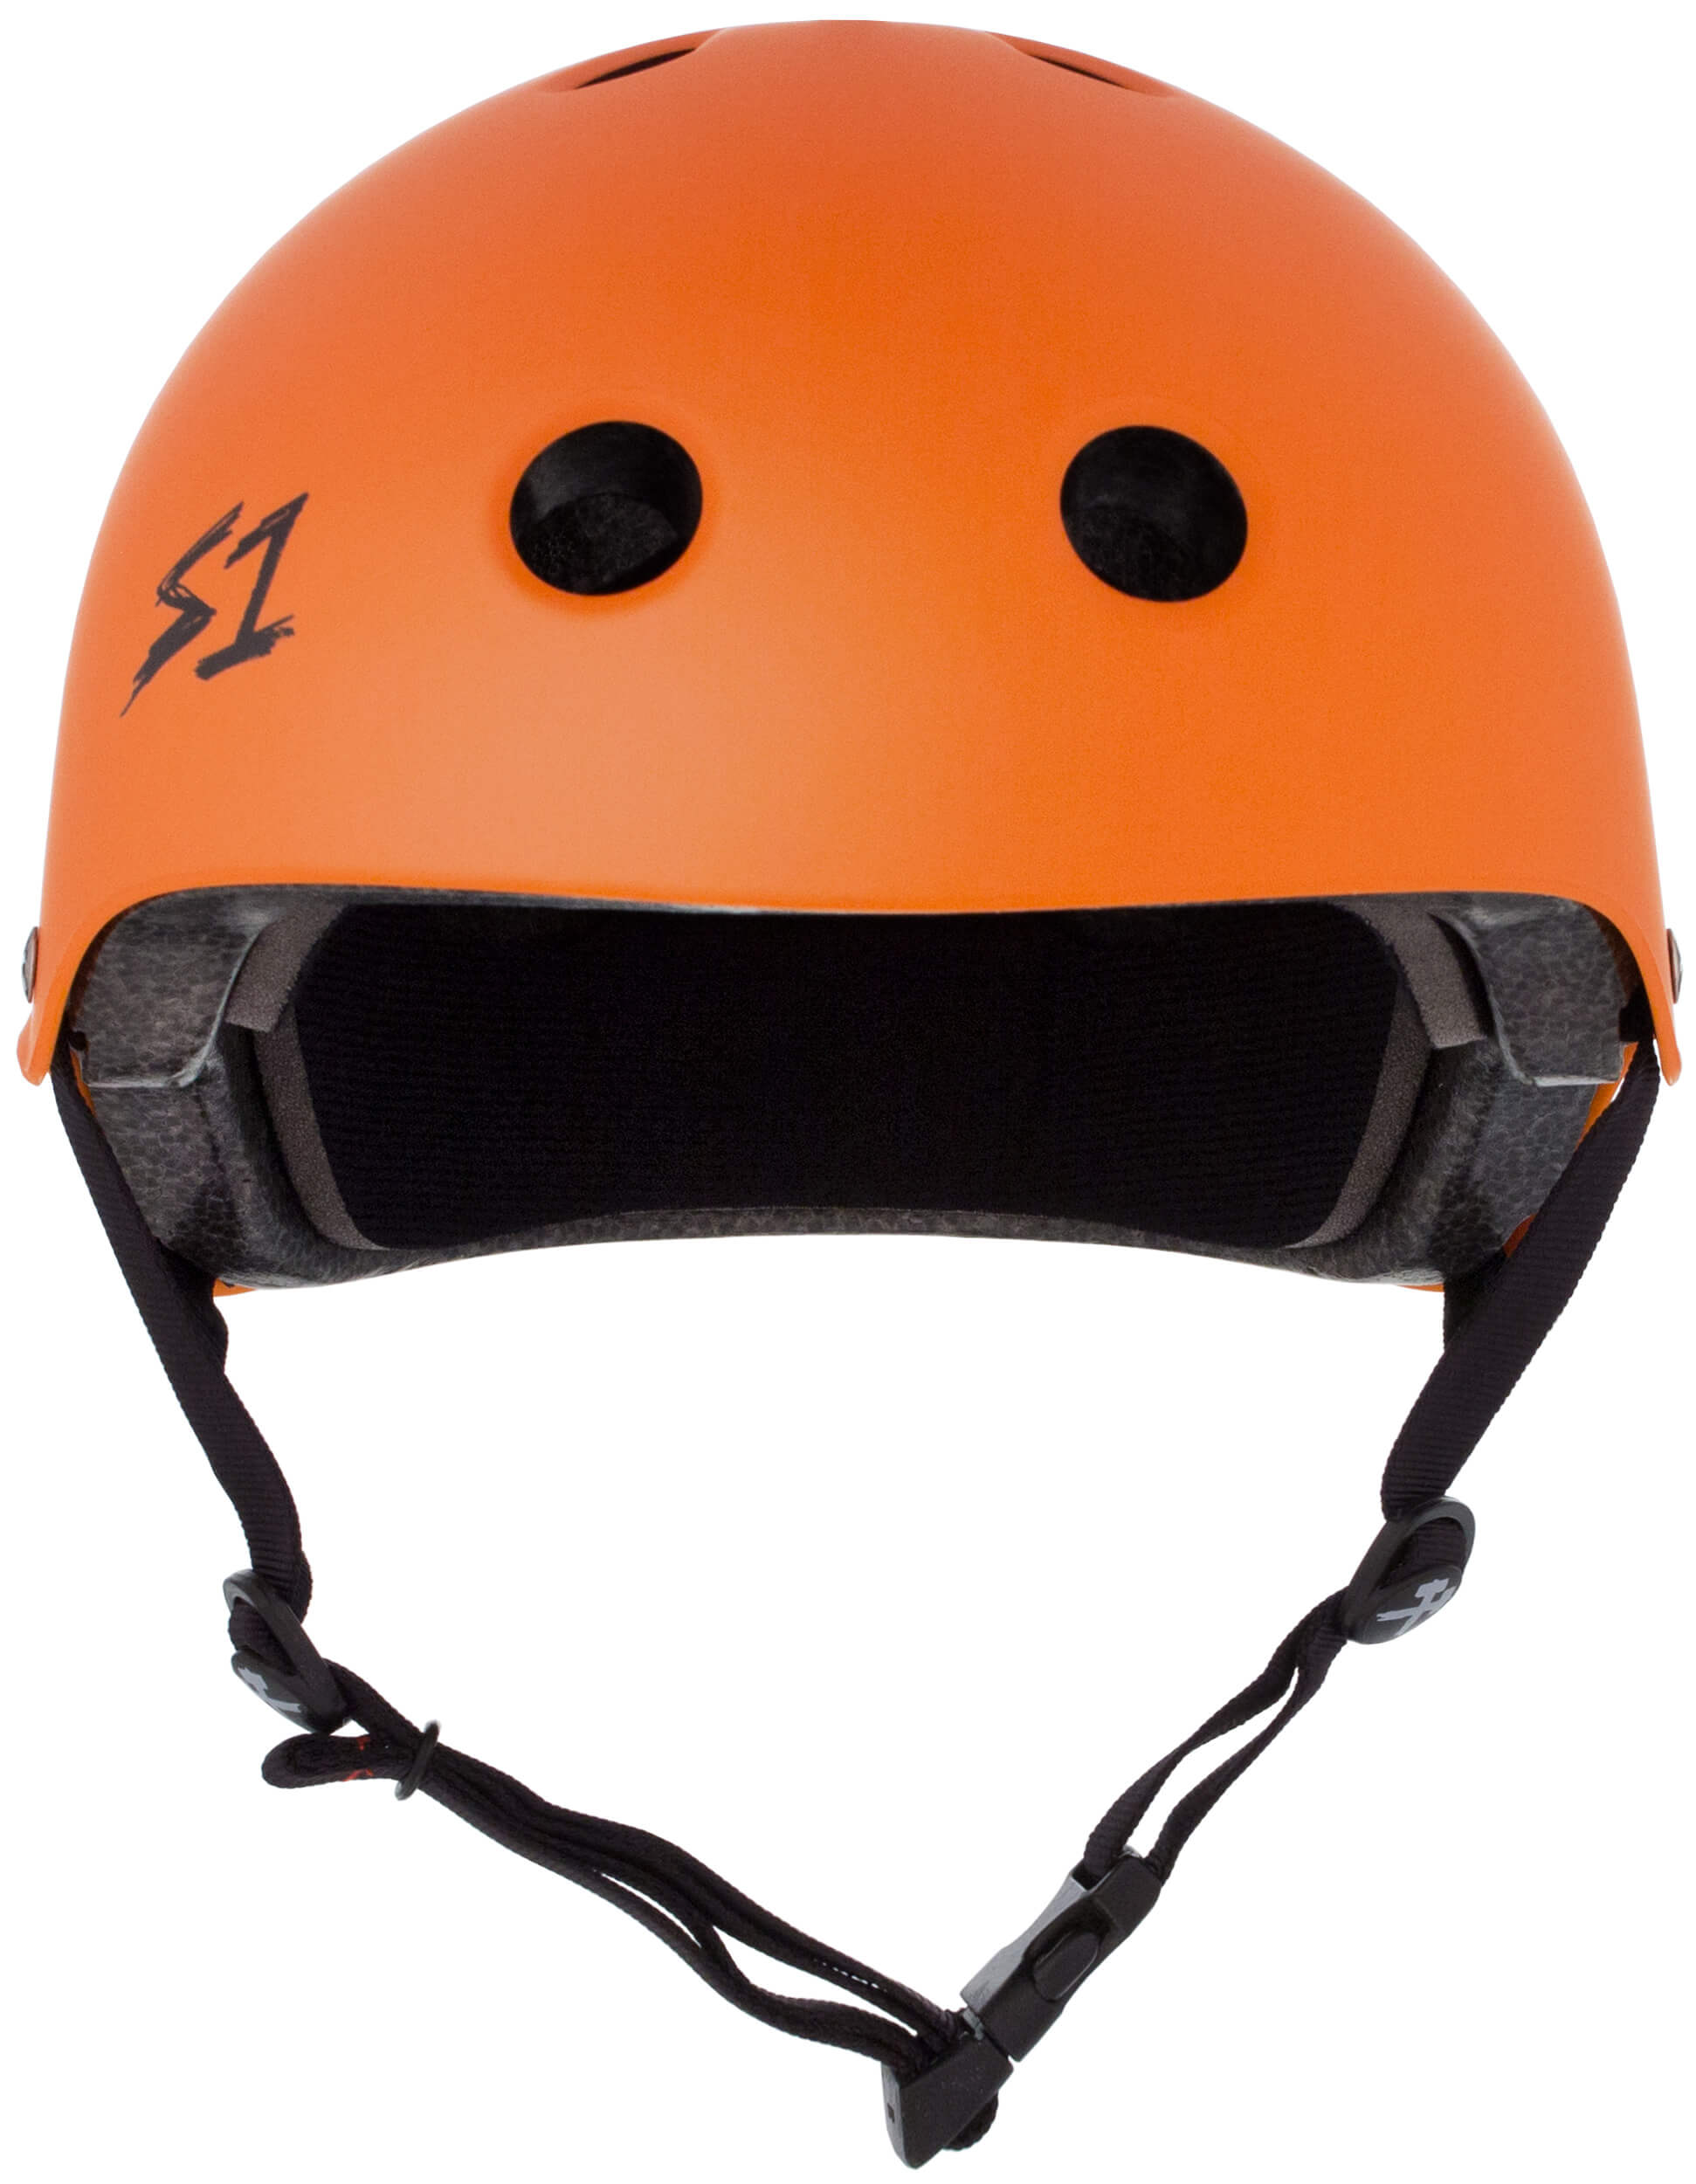 S1 Lifer Helmet - Casque Orange mât avec sangles noires